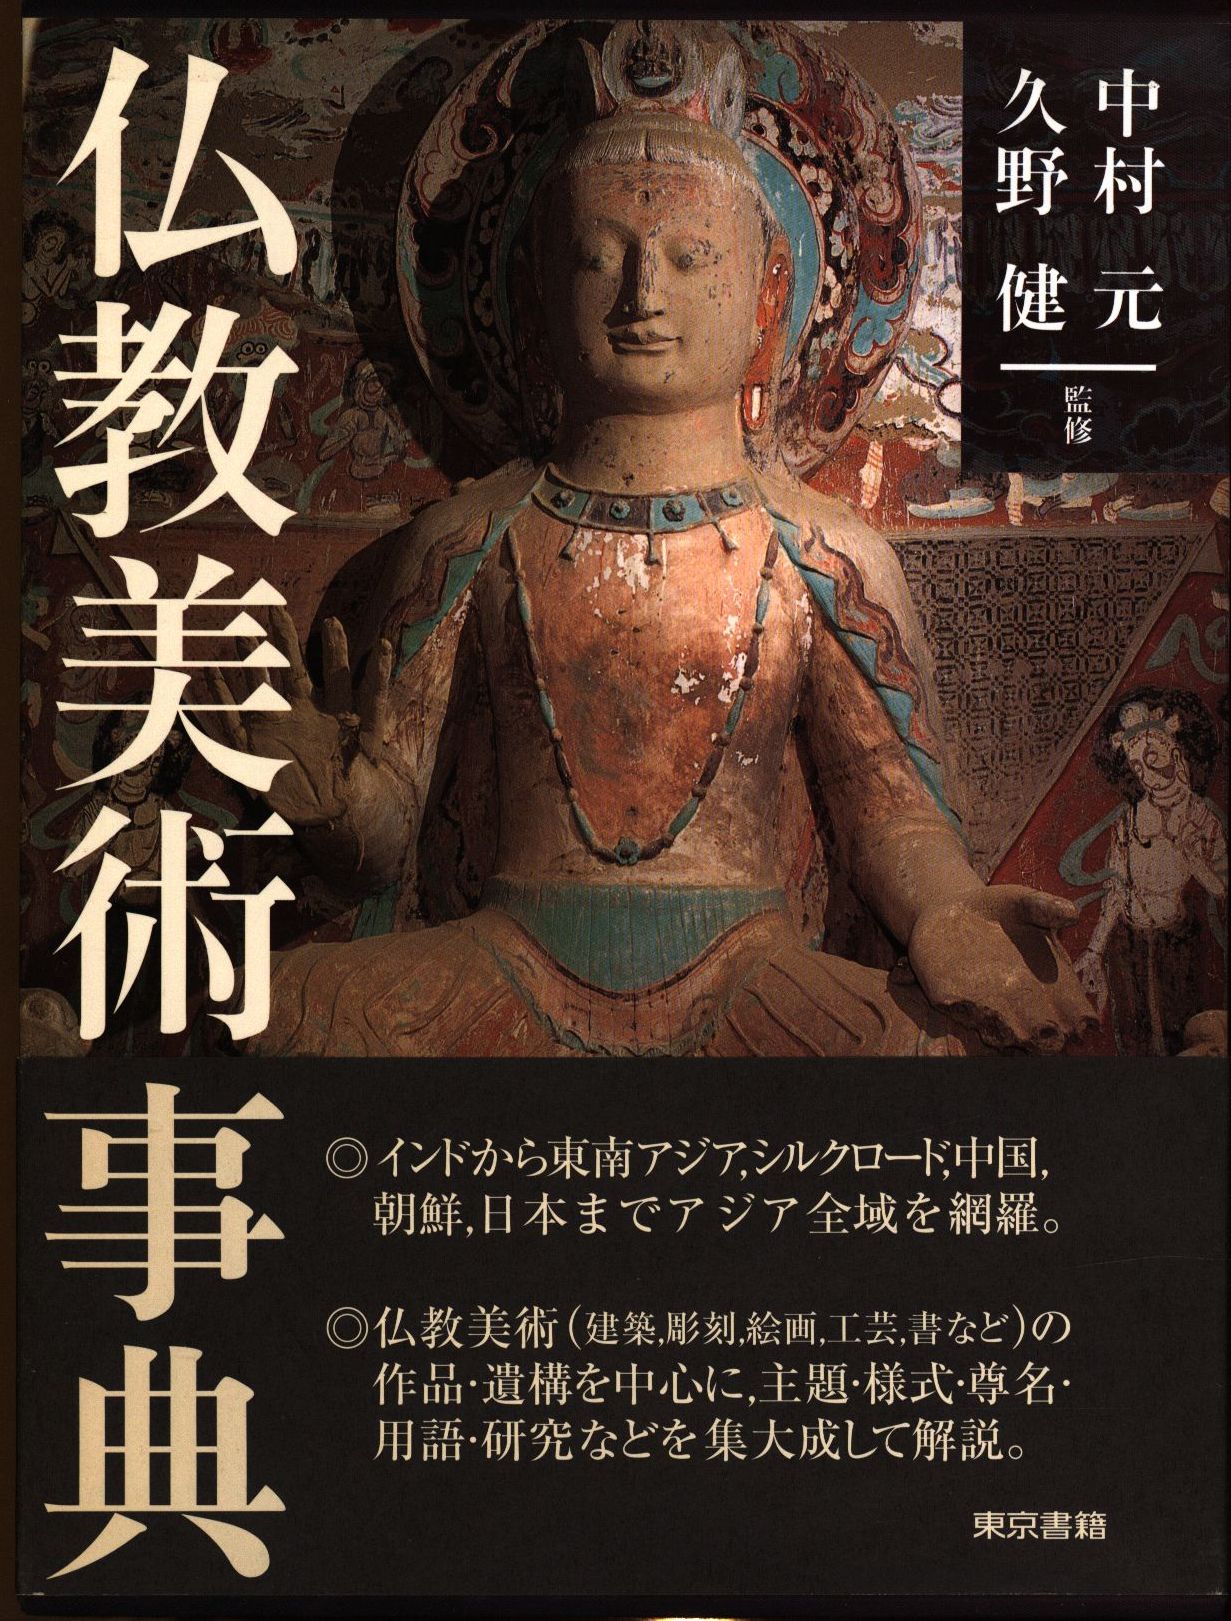 中村元/久野健 仏教美術事典 | まんだらけ Mandarake